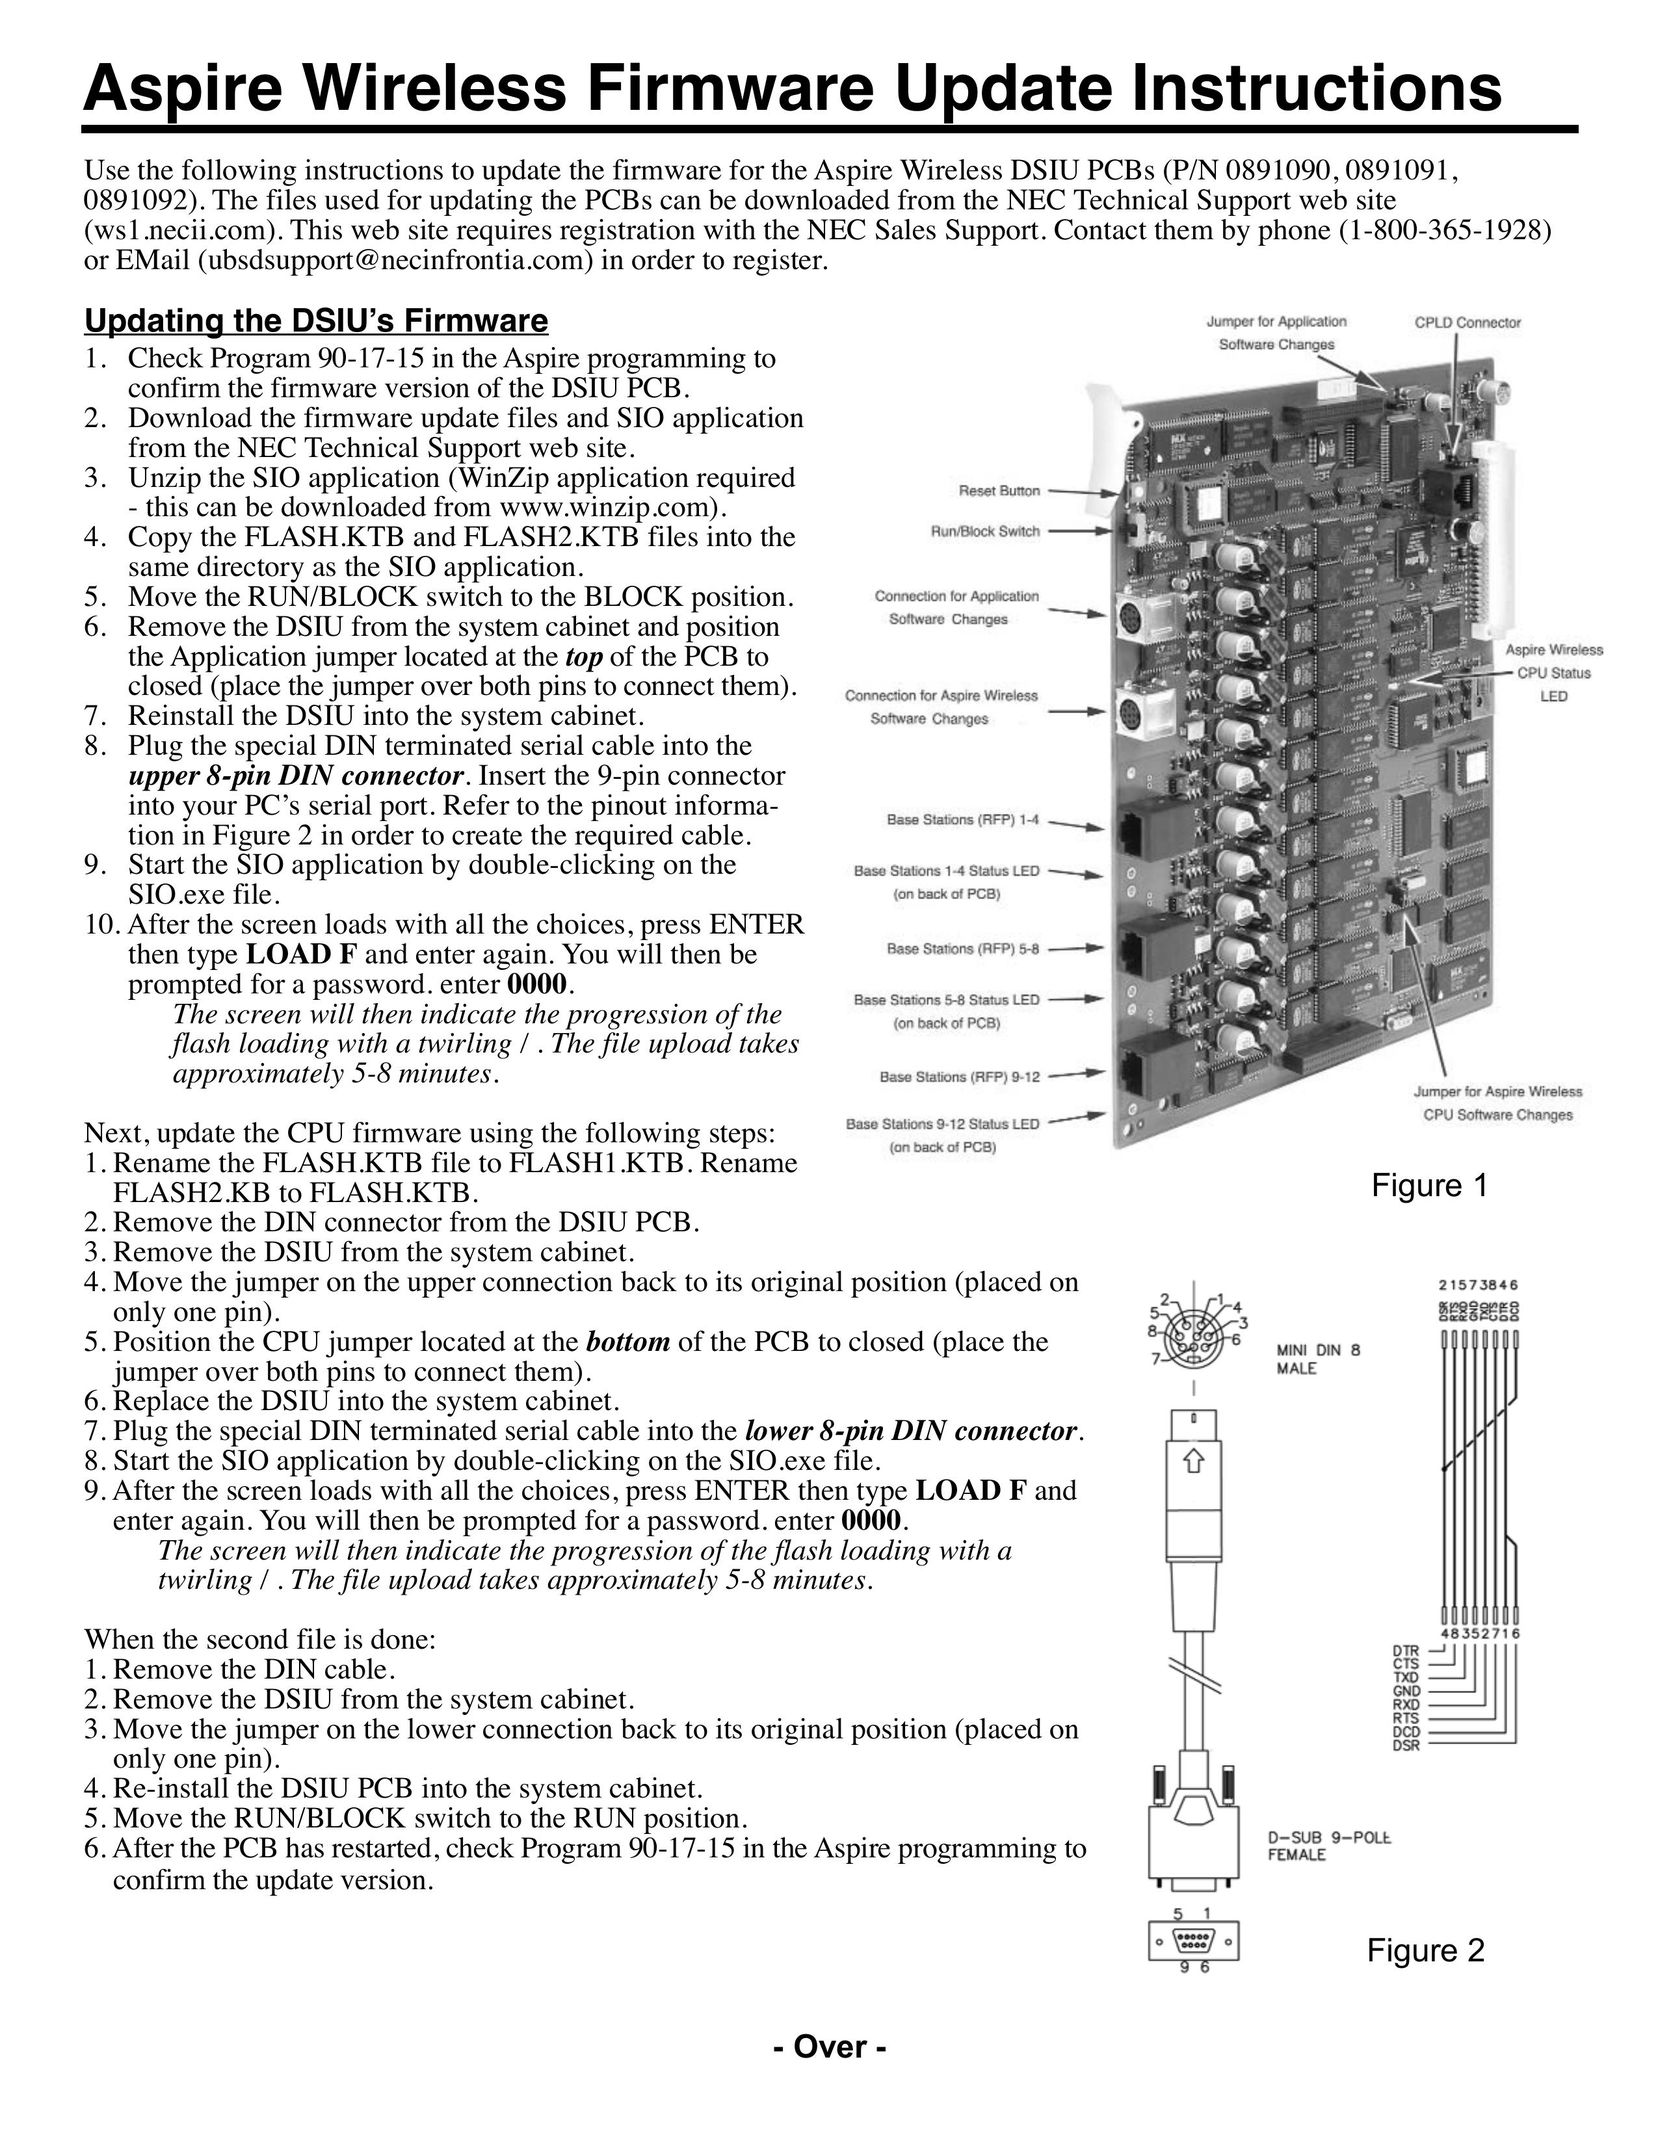 Aspire Digital 891090 Network Hardware User Manual